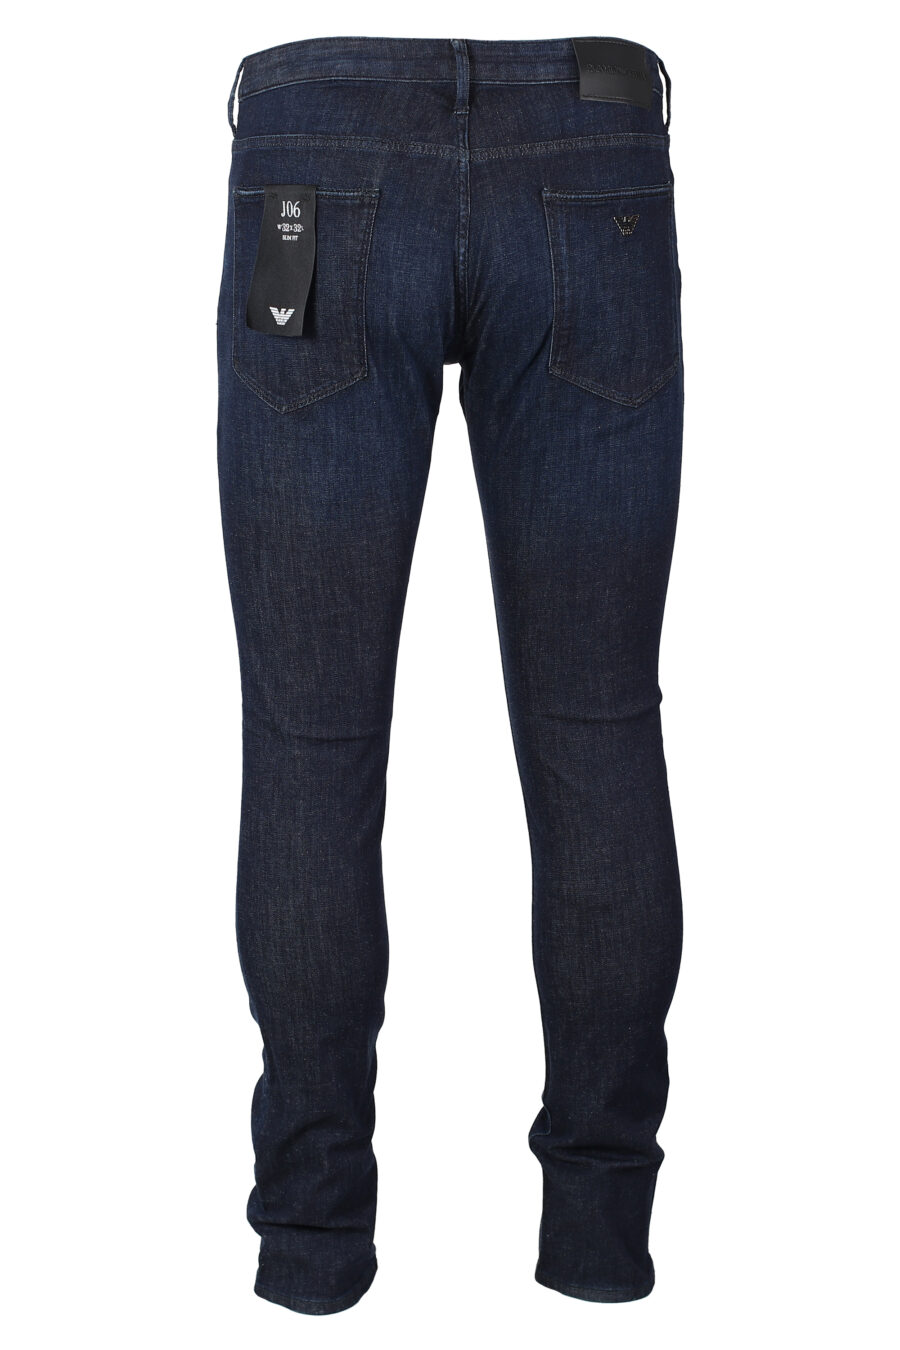 Pantalón vaquero azul oscuro semidesgastado con minilogo metal - IMG 9930